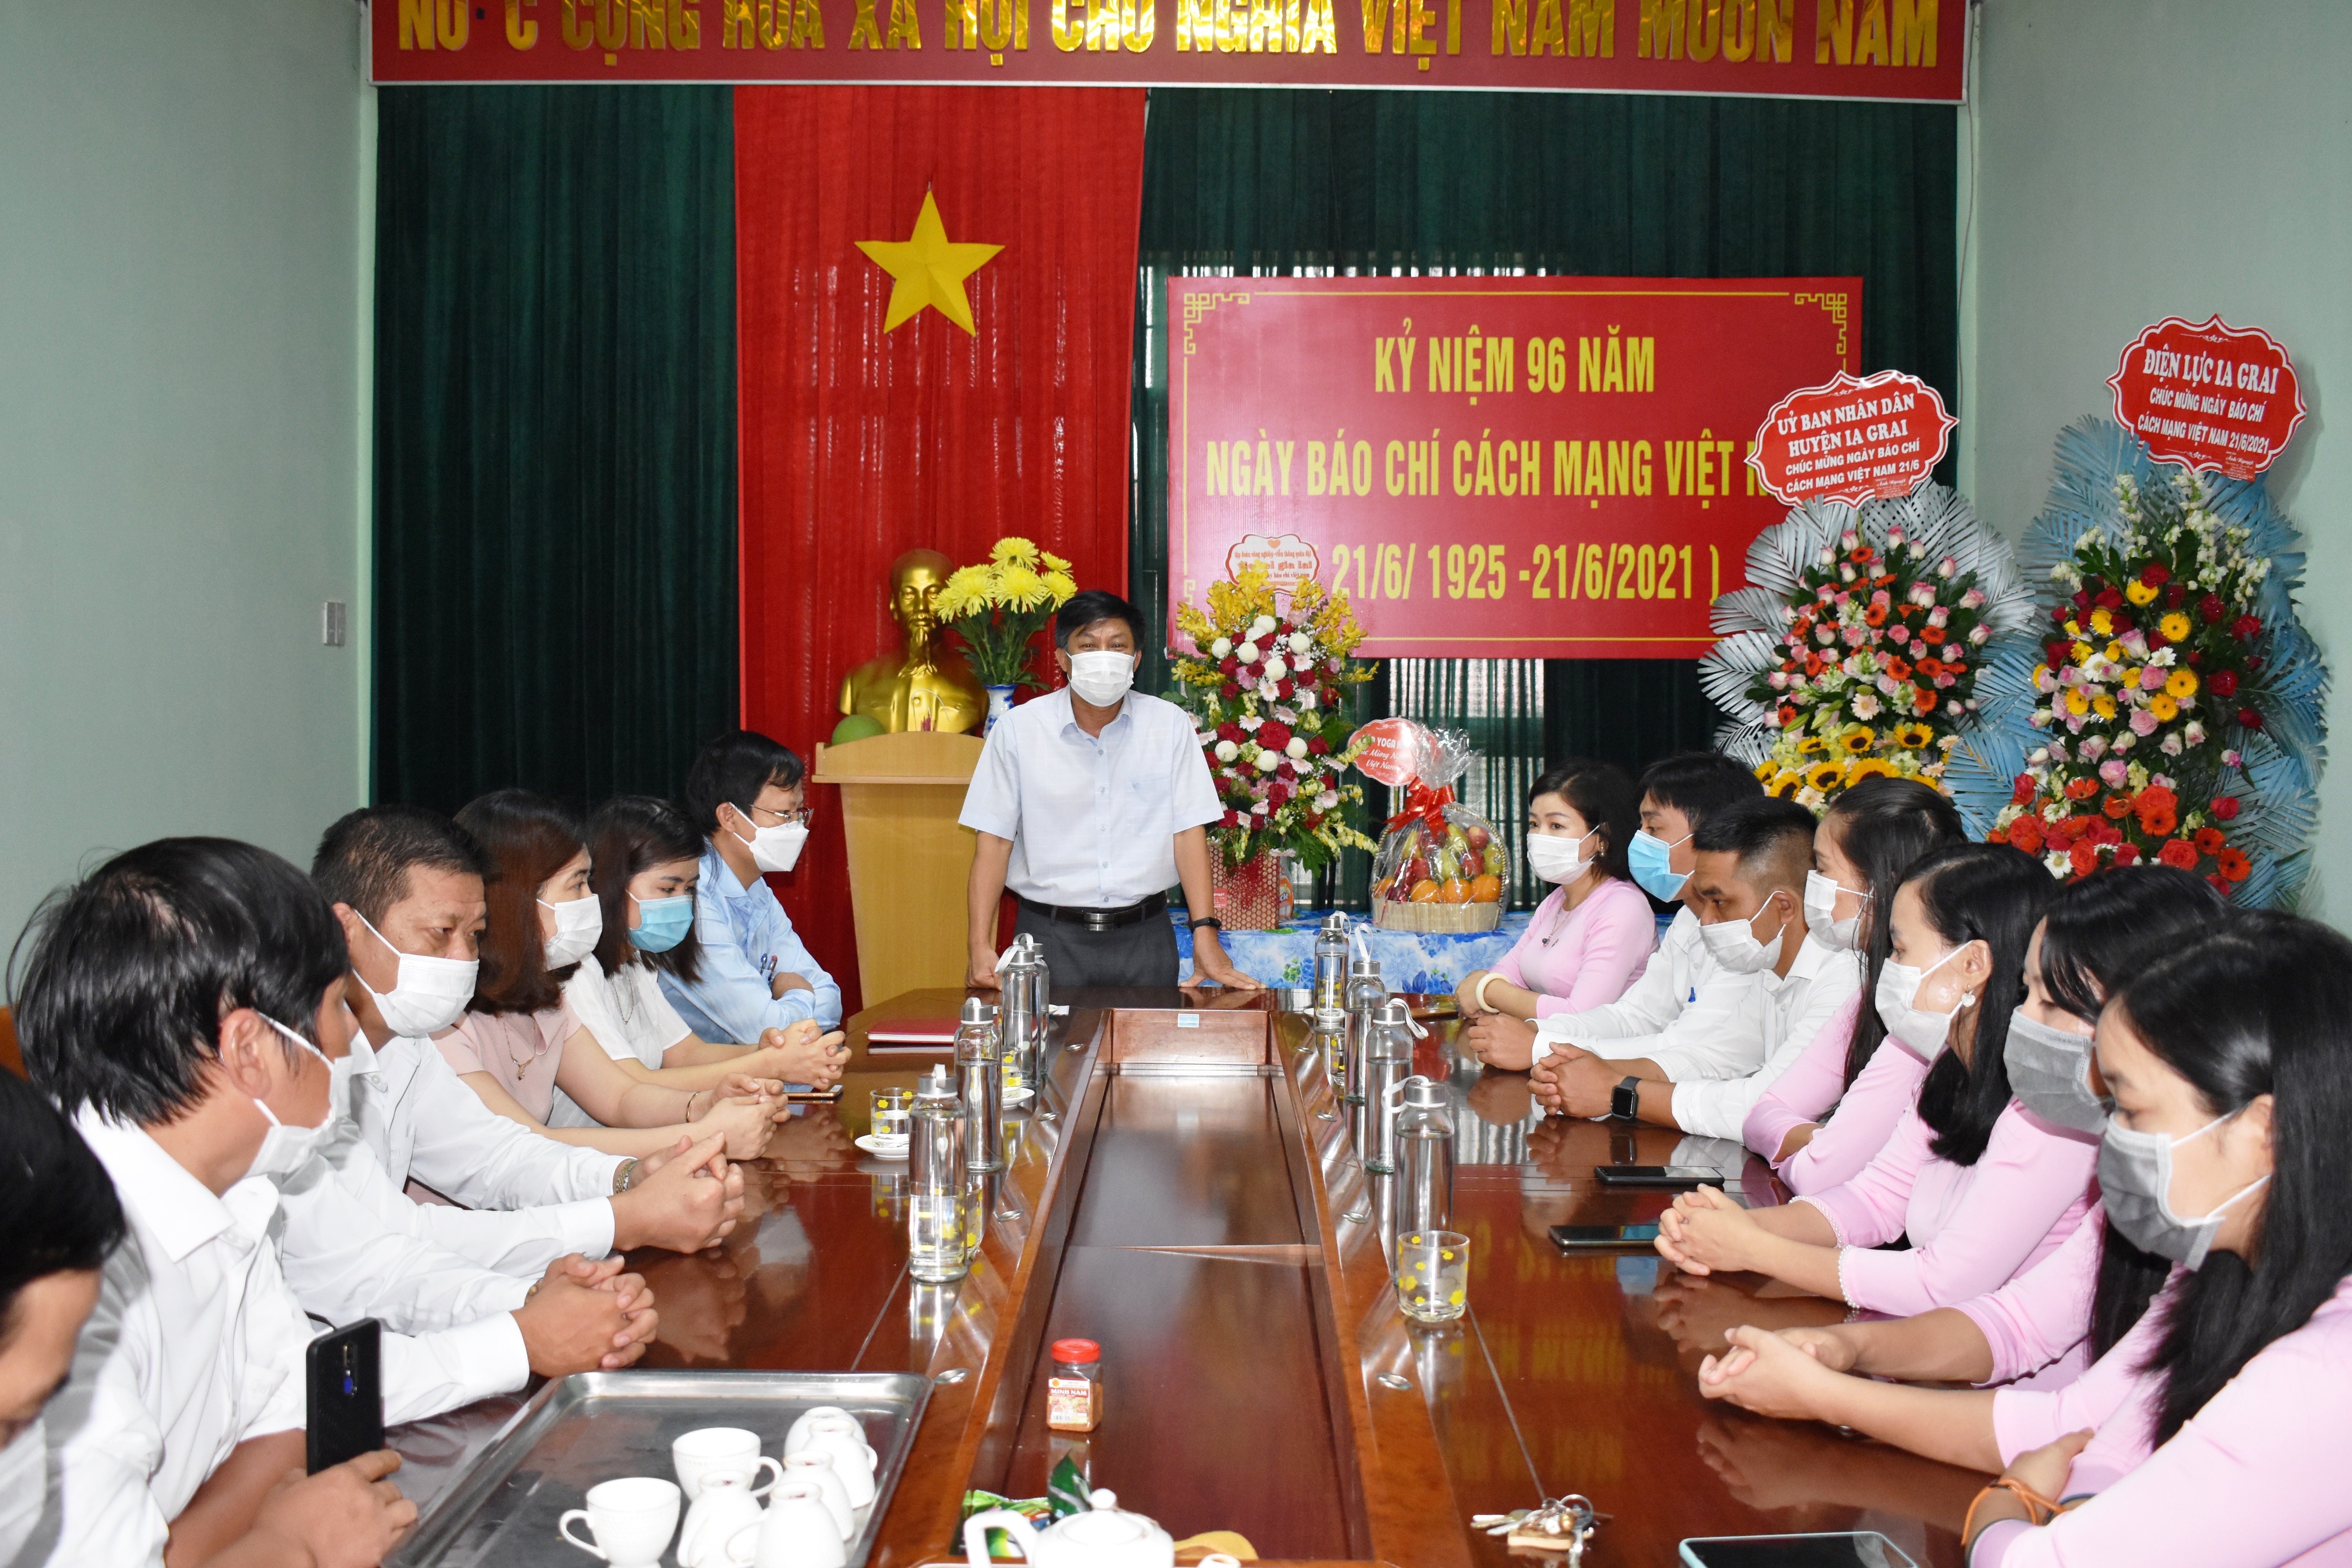 Article Lãnh đạo huyện Ia Grai: Thăm, tặng hoa chúc mừng nhân kỷ niệm 96 năm ngày “Báo chí Cách Mạng Viêt Nam”